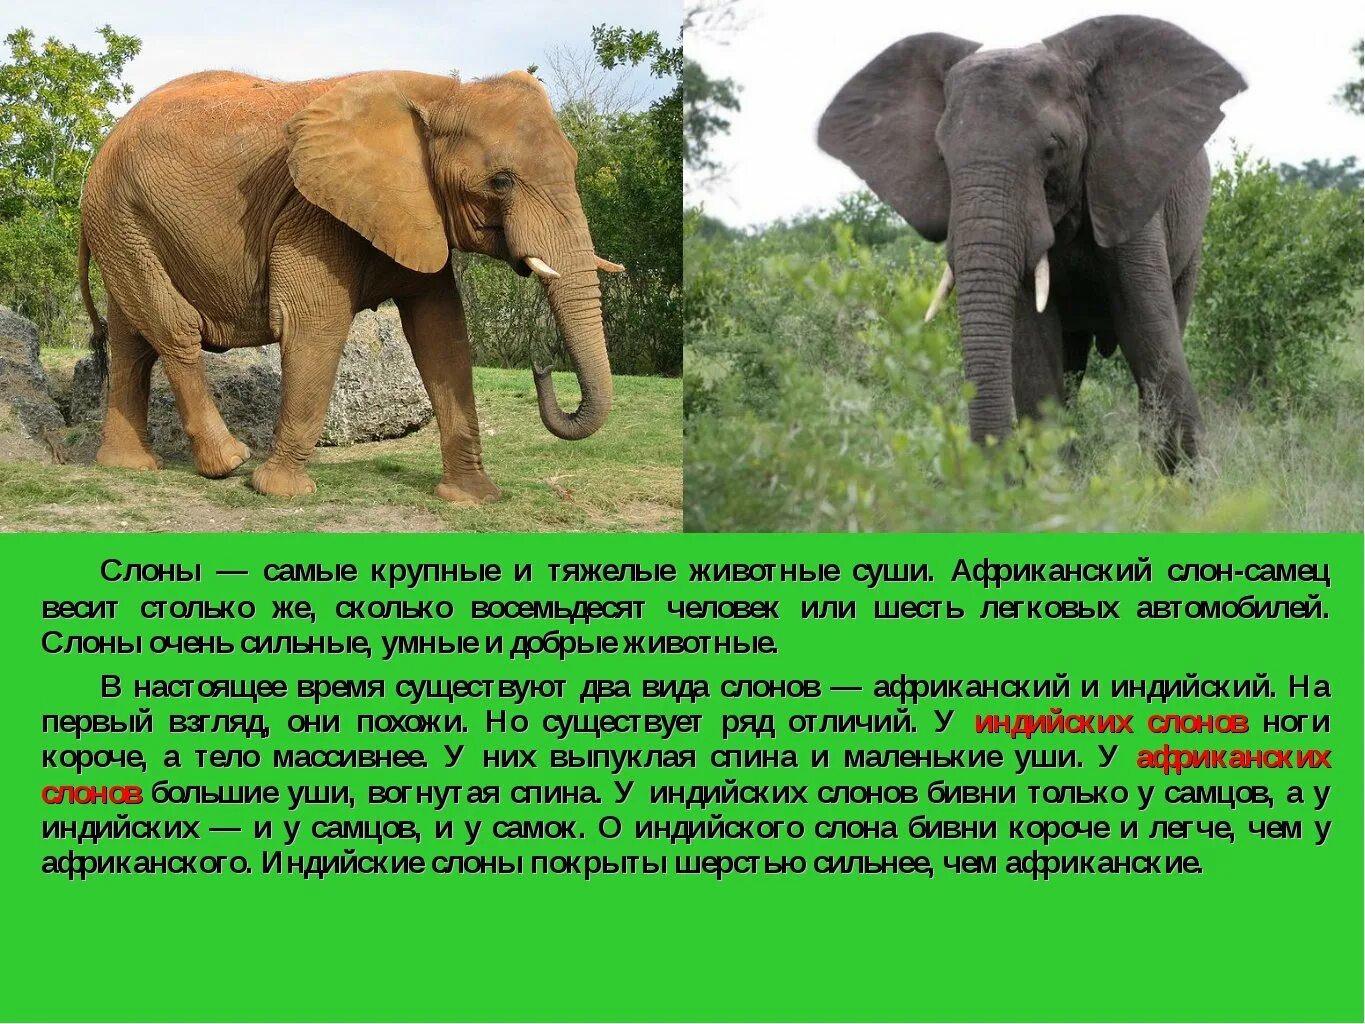 Крупные наземные млекопитающие. Описание слона. Слон описание животного. Описать слона. Африканский слон.